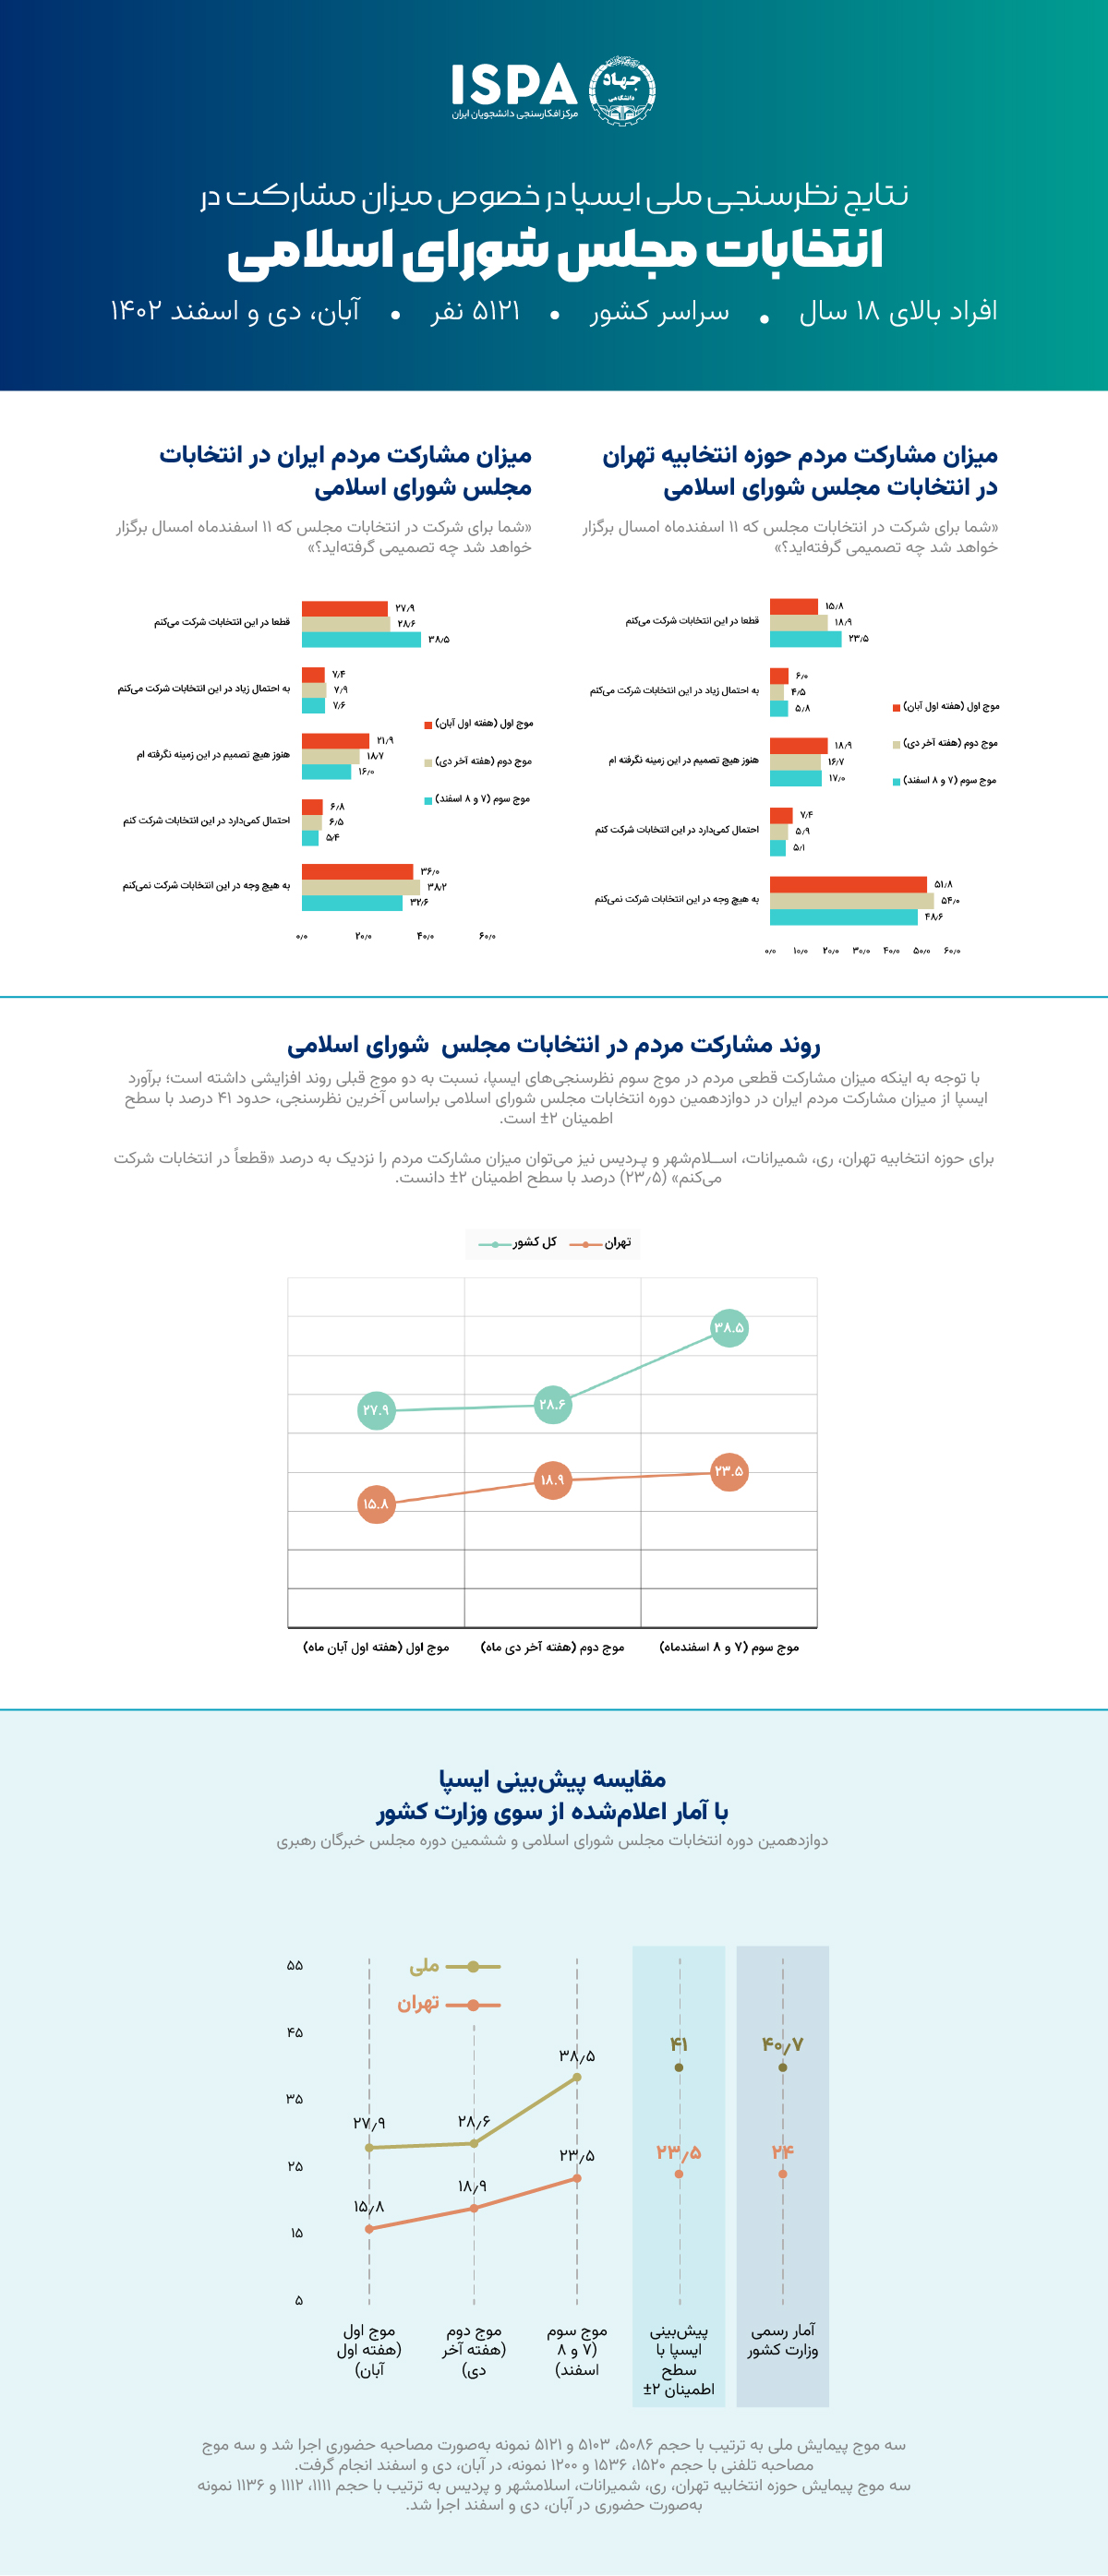 آخرین نتایج نظرسنجی ملی ایسپا در خصوص میزان مشارکت در انتخابات مجلس شورای اسلامی